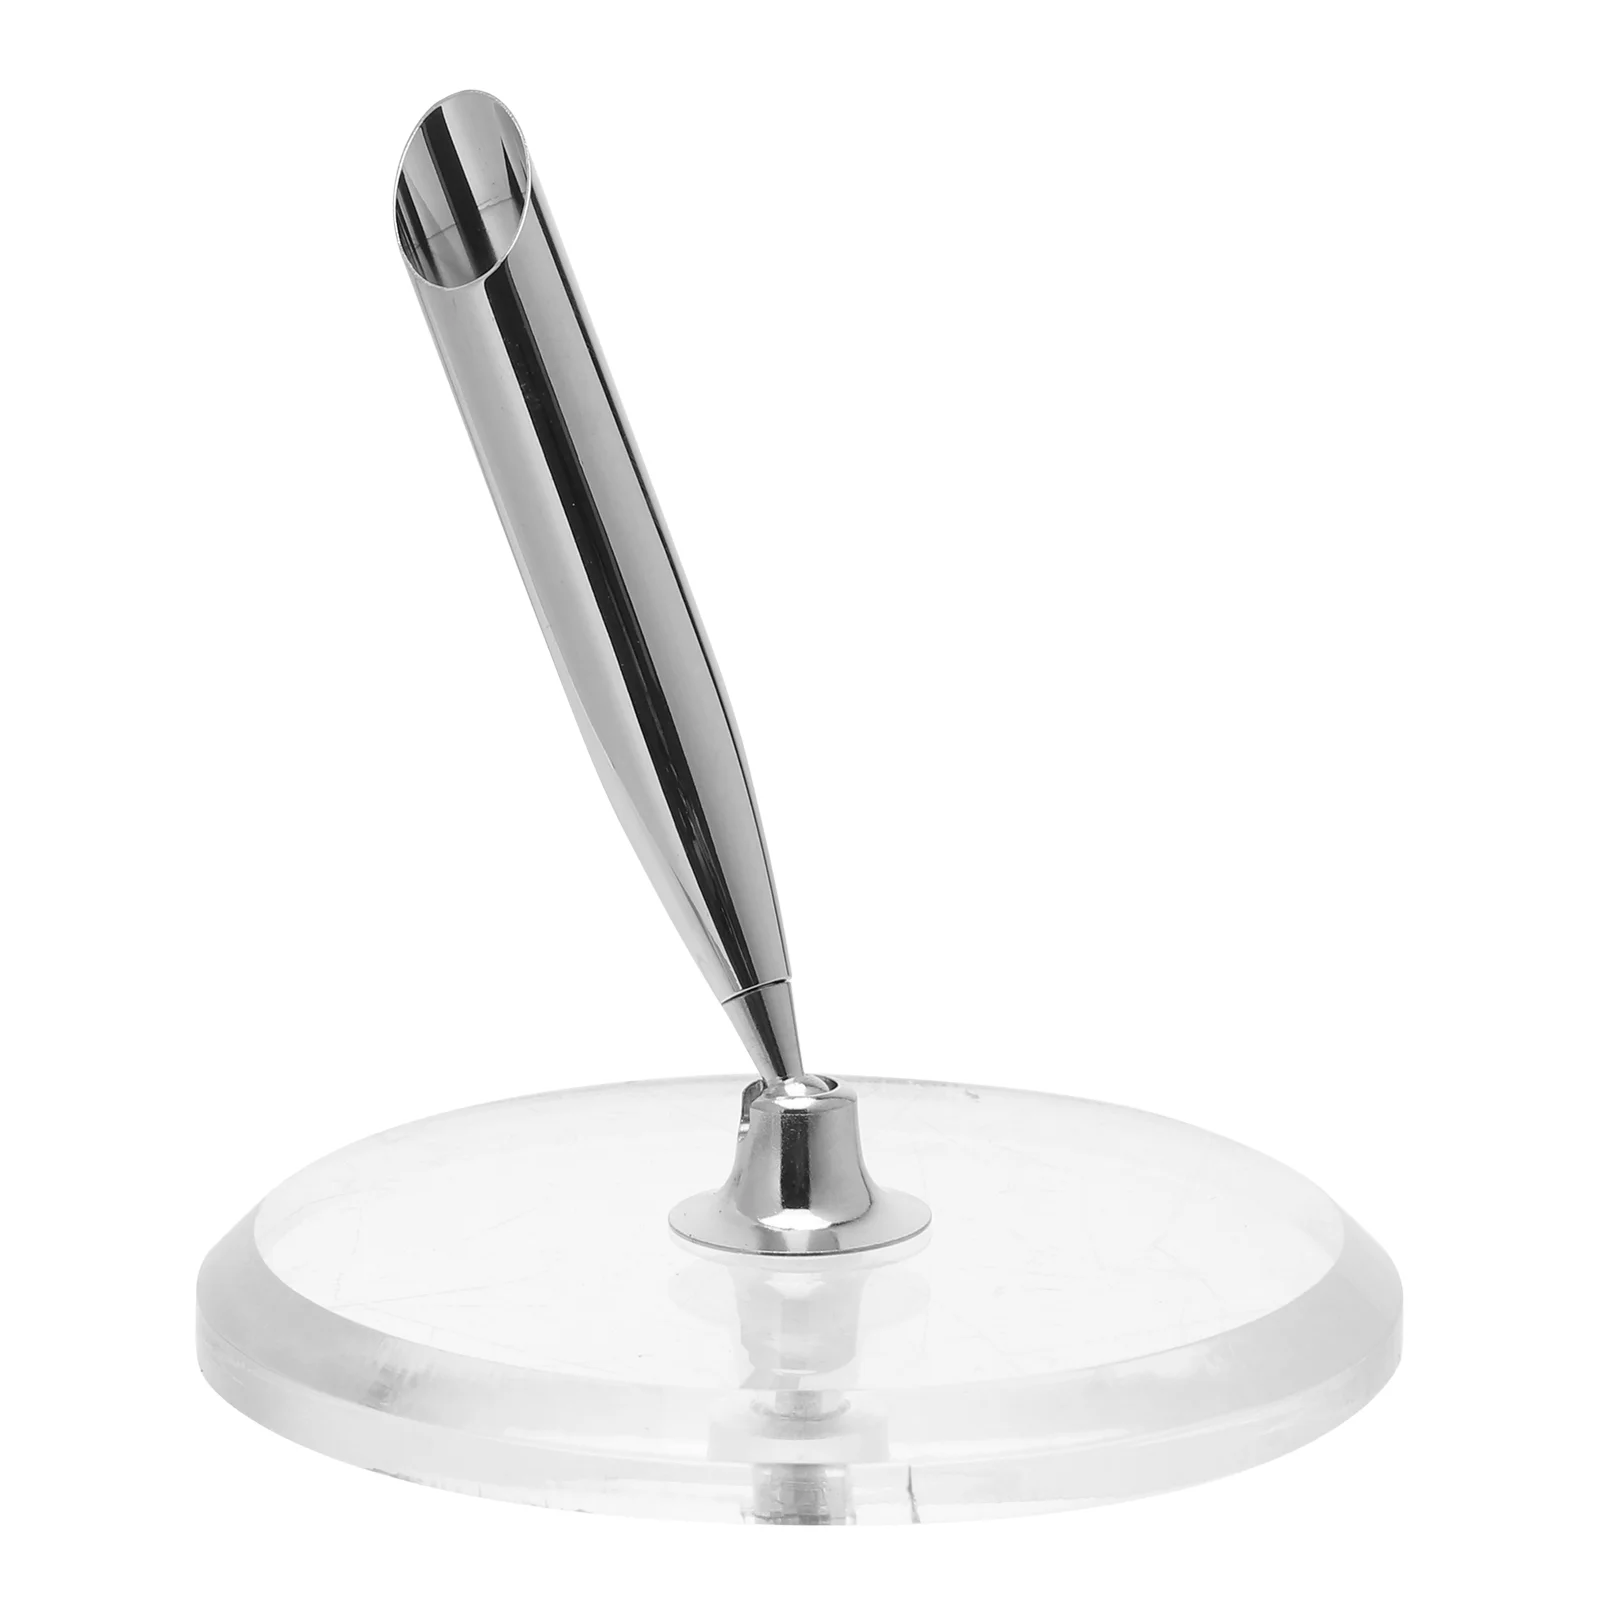 

Акриловая Хрустальная основа для ручки, Круглый держатель для ручки, подарок, сувенир